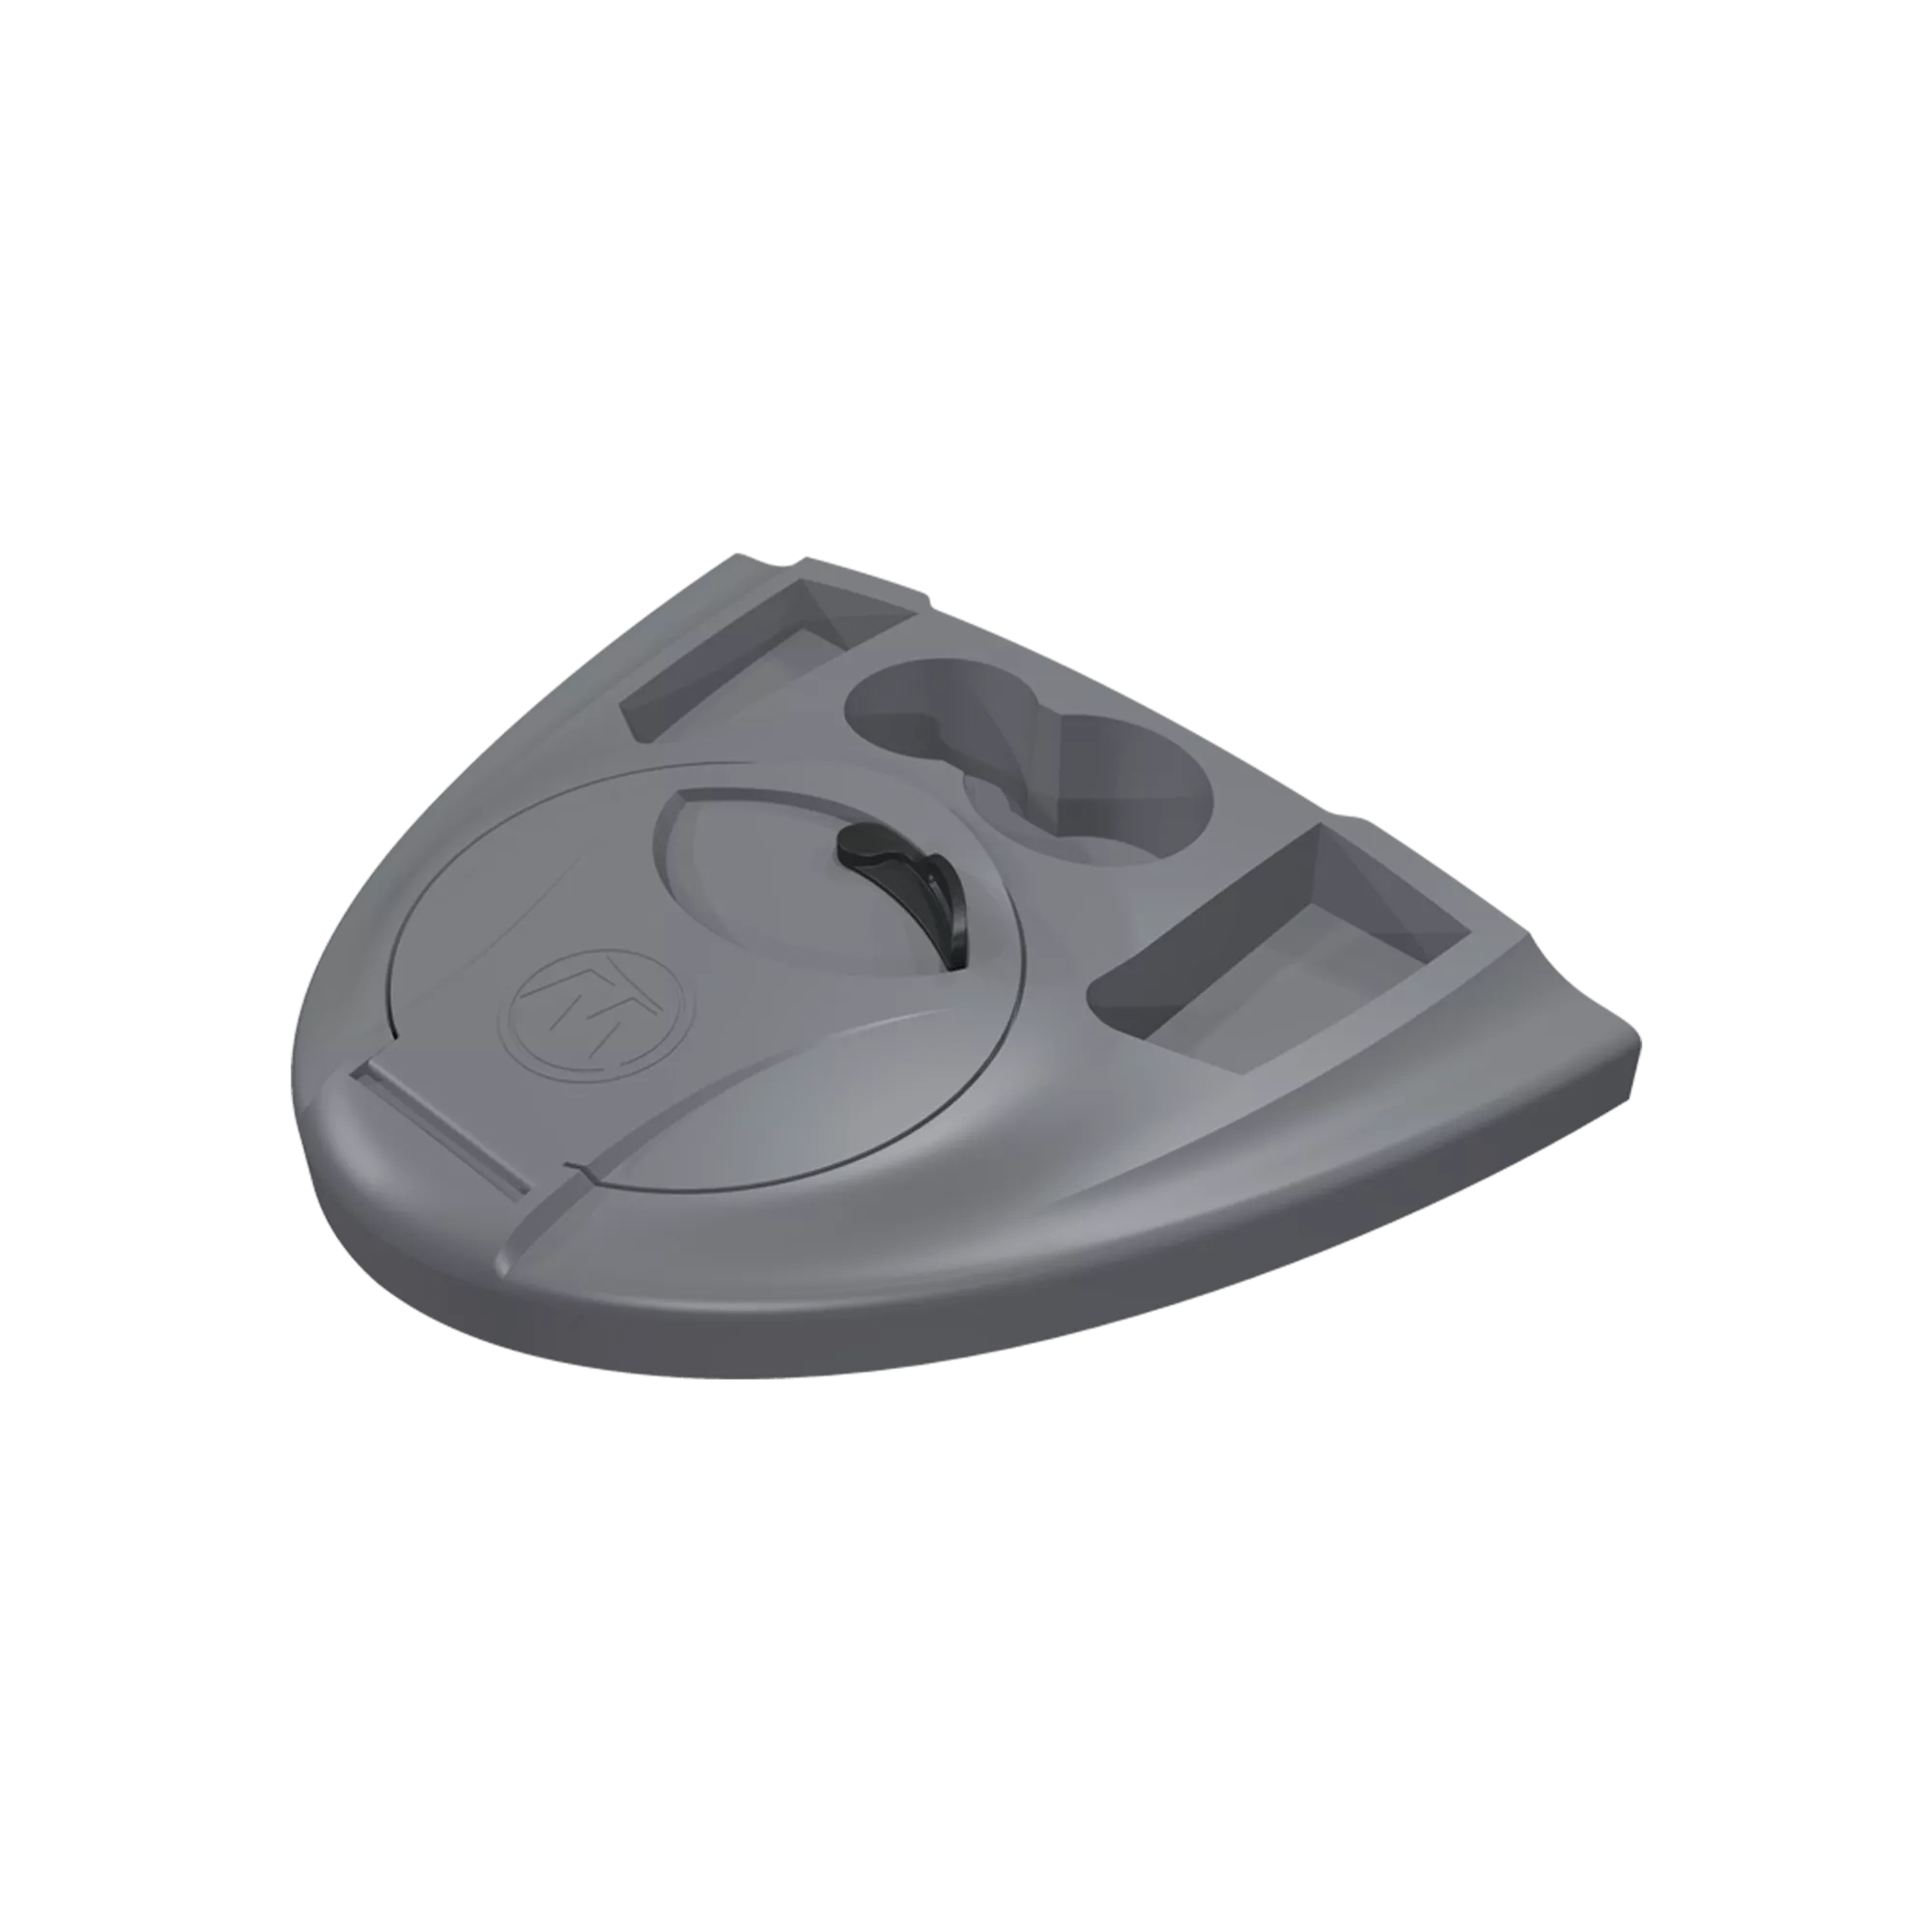 WILDERNESS SYSTEMS - Console de kayak -  - 8070001 - 